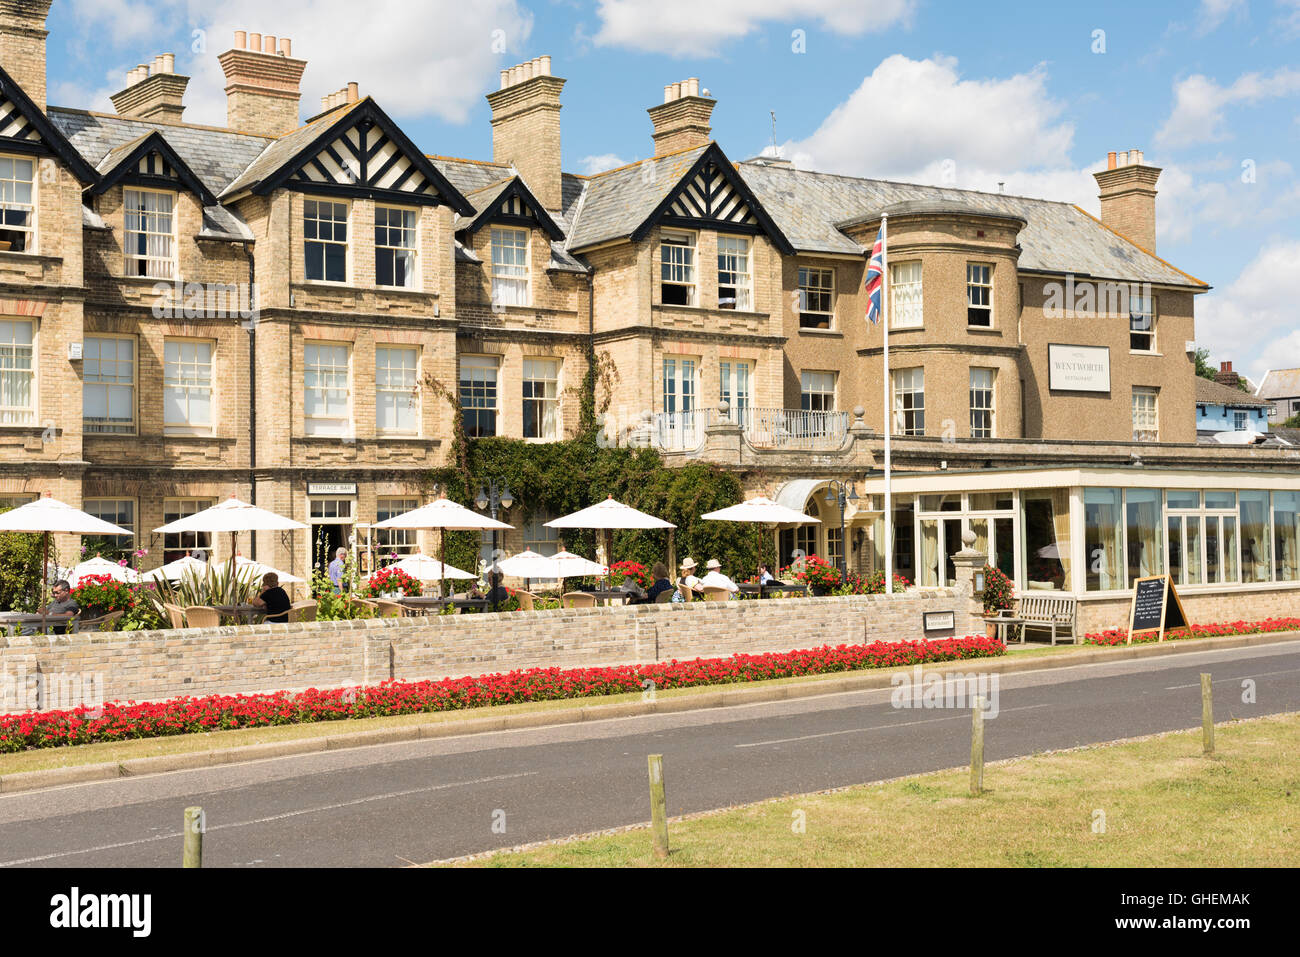 The Wentworth Hotel Aldeburgh Suffolk UK in summer Stock Photo